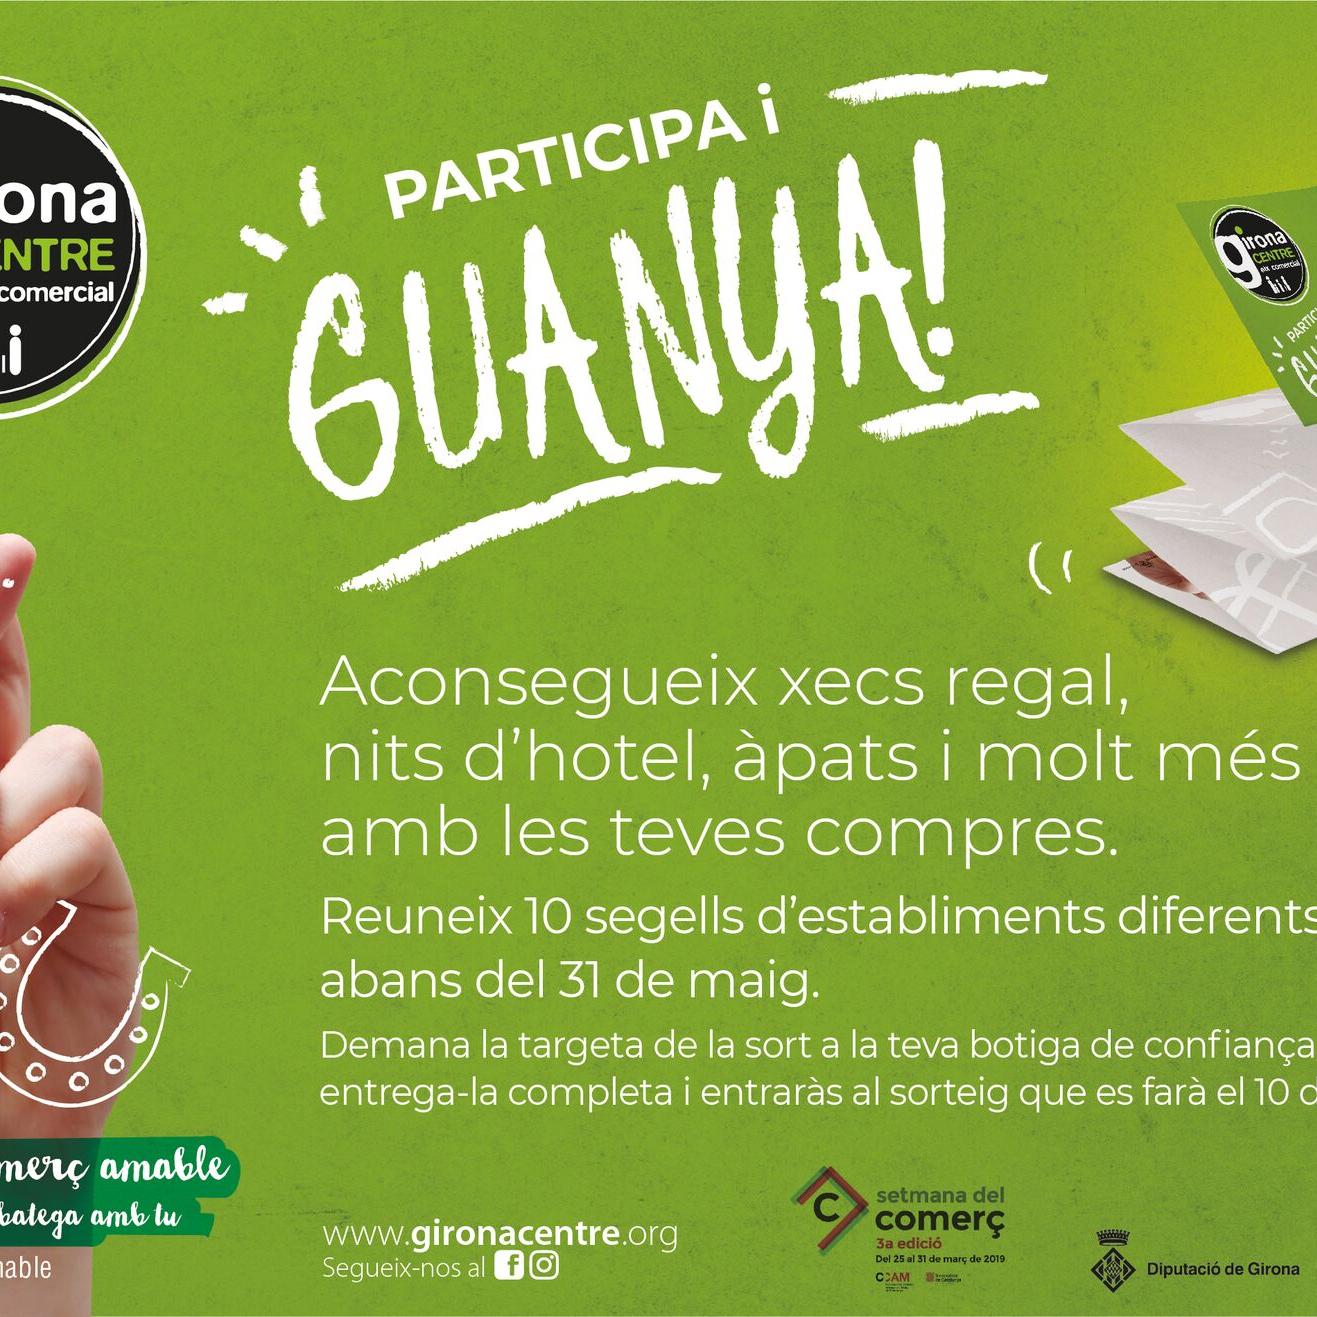 Girona Centre llança la campanya “Targeta de la sort”